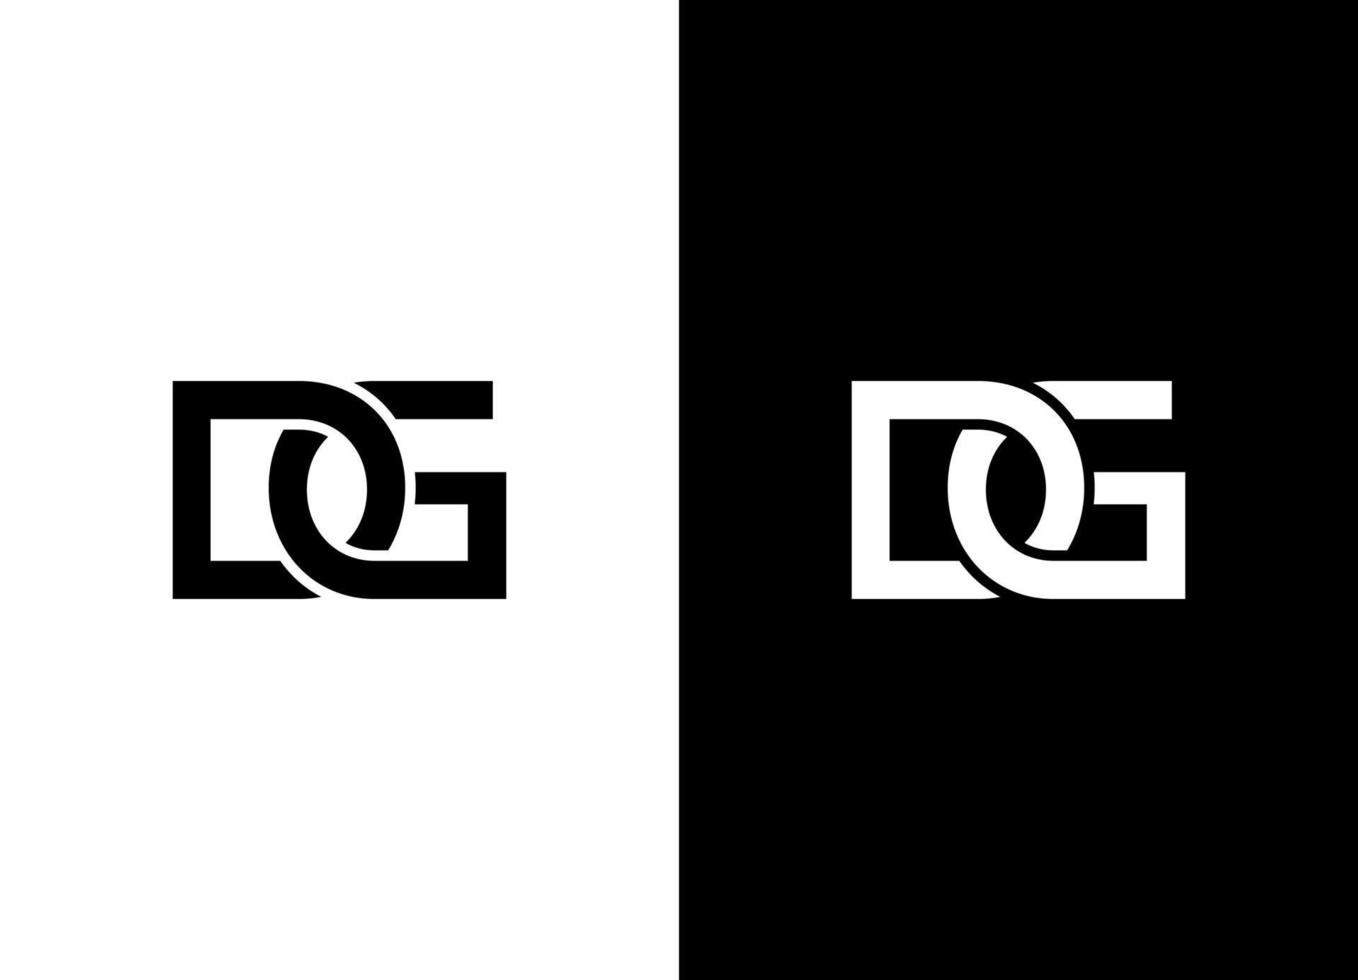 gd or dg logo design free vector template